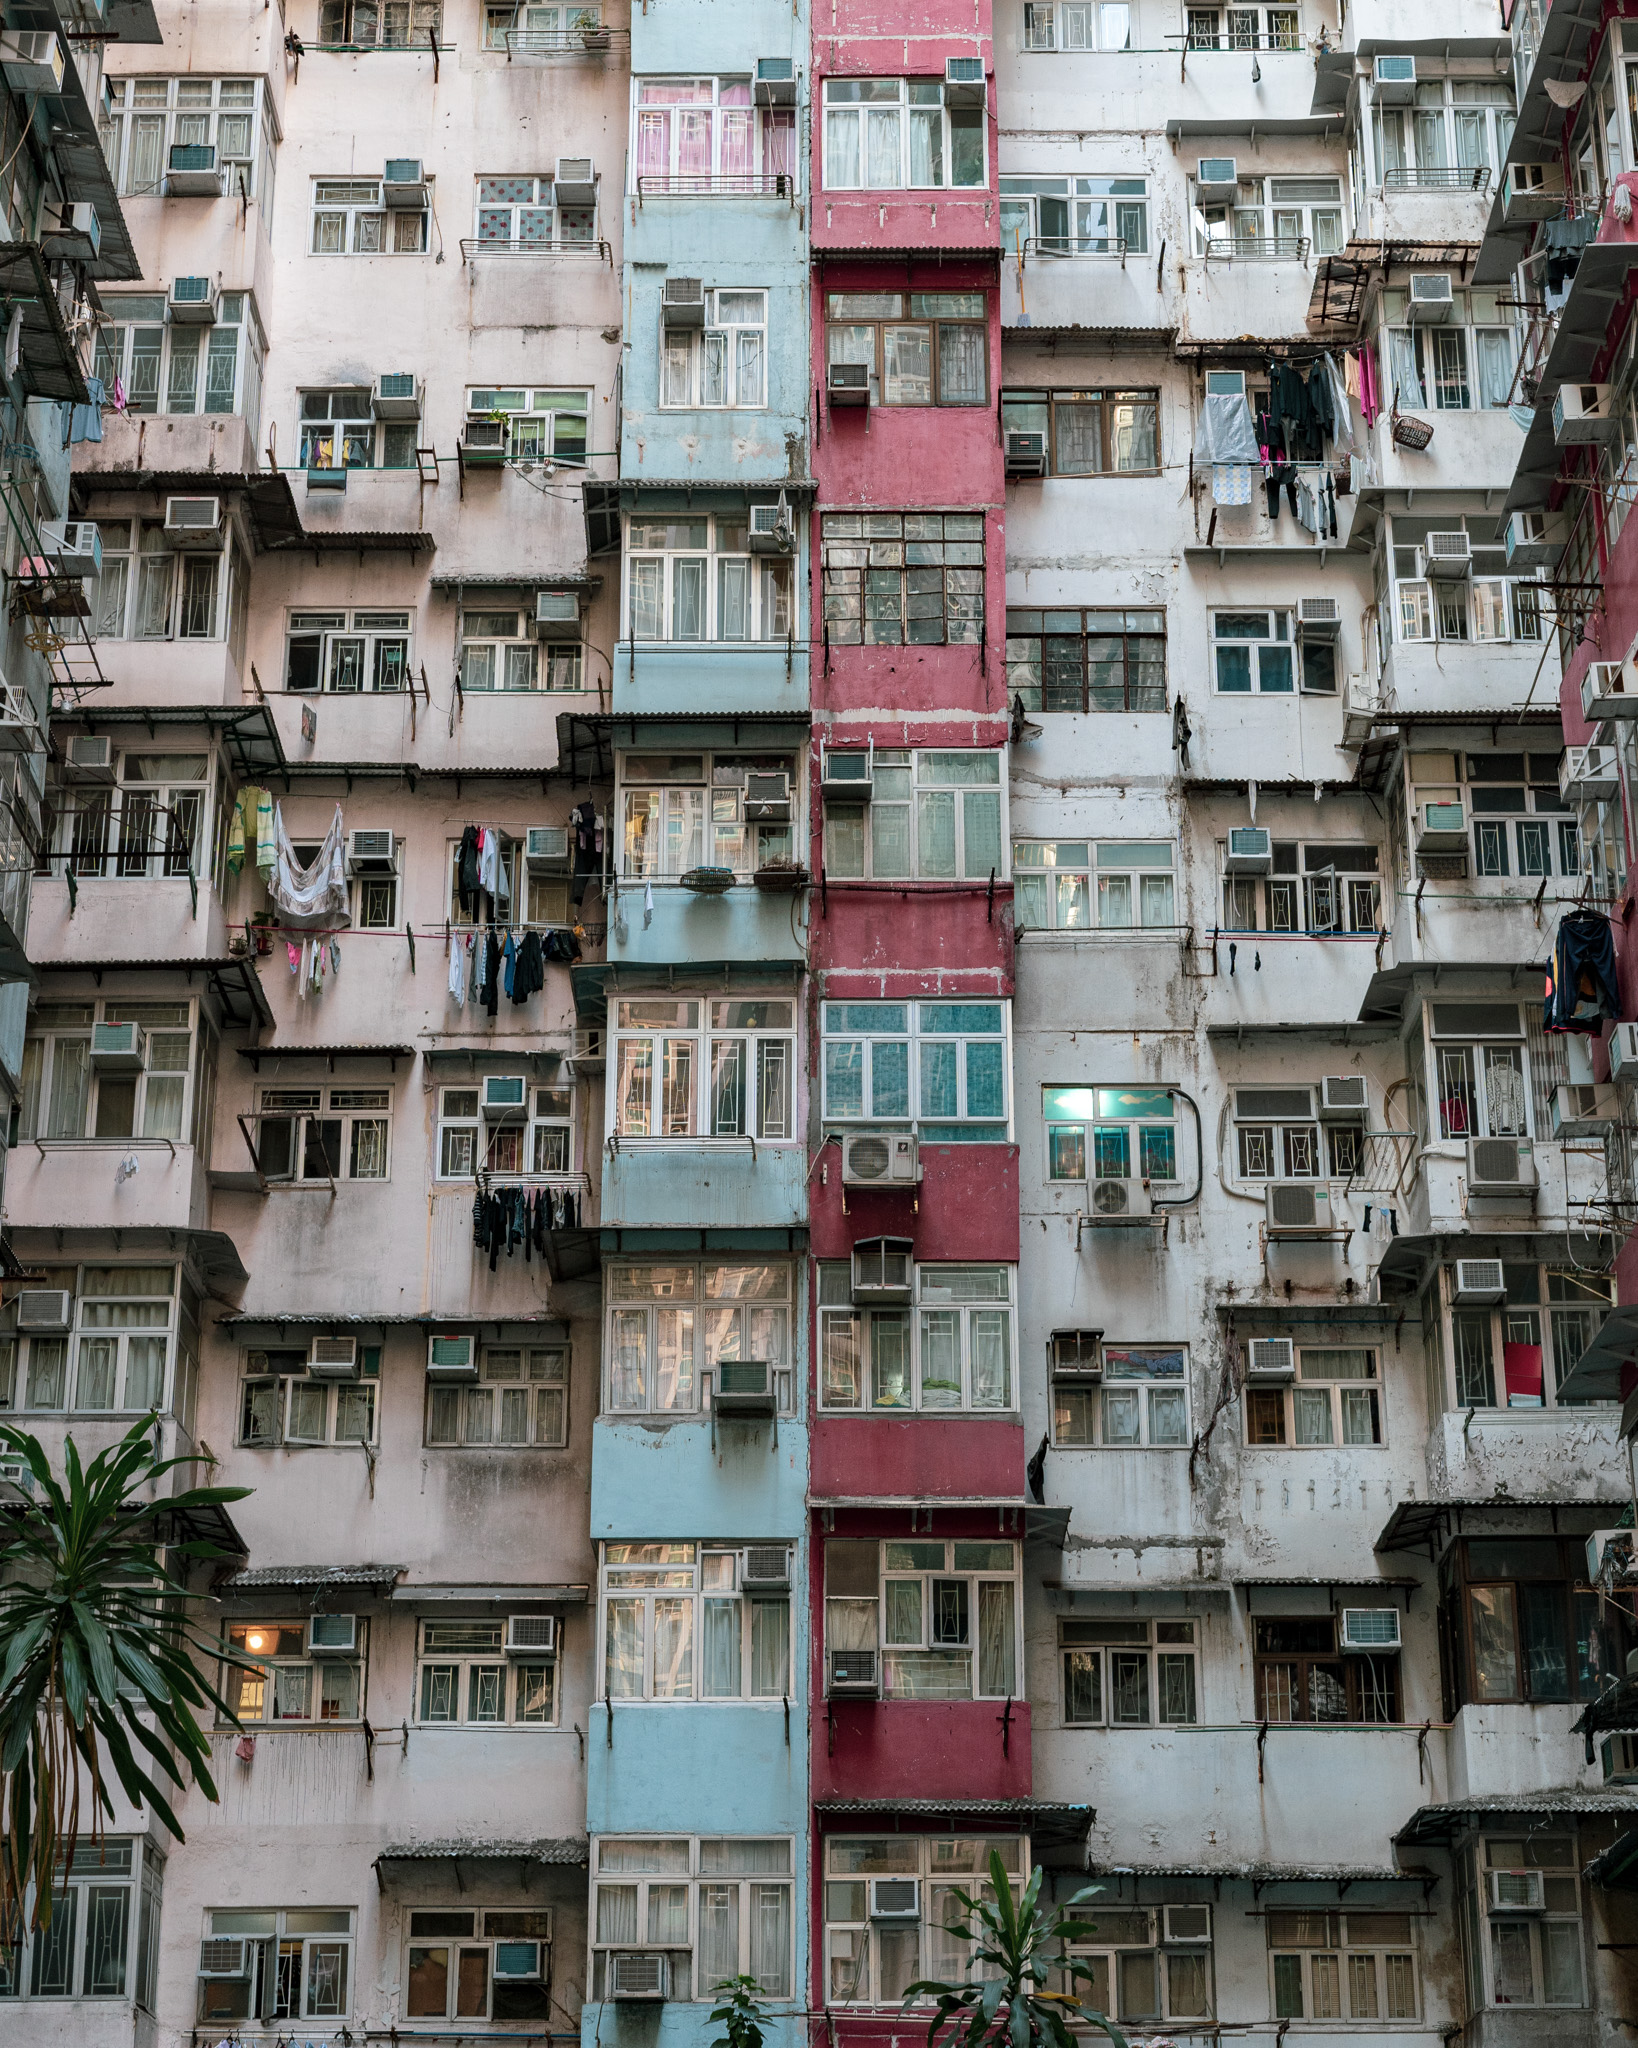 Dense housing in Hong Kong